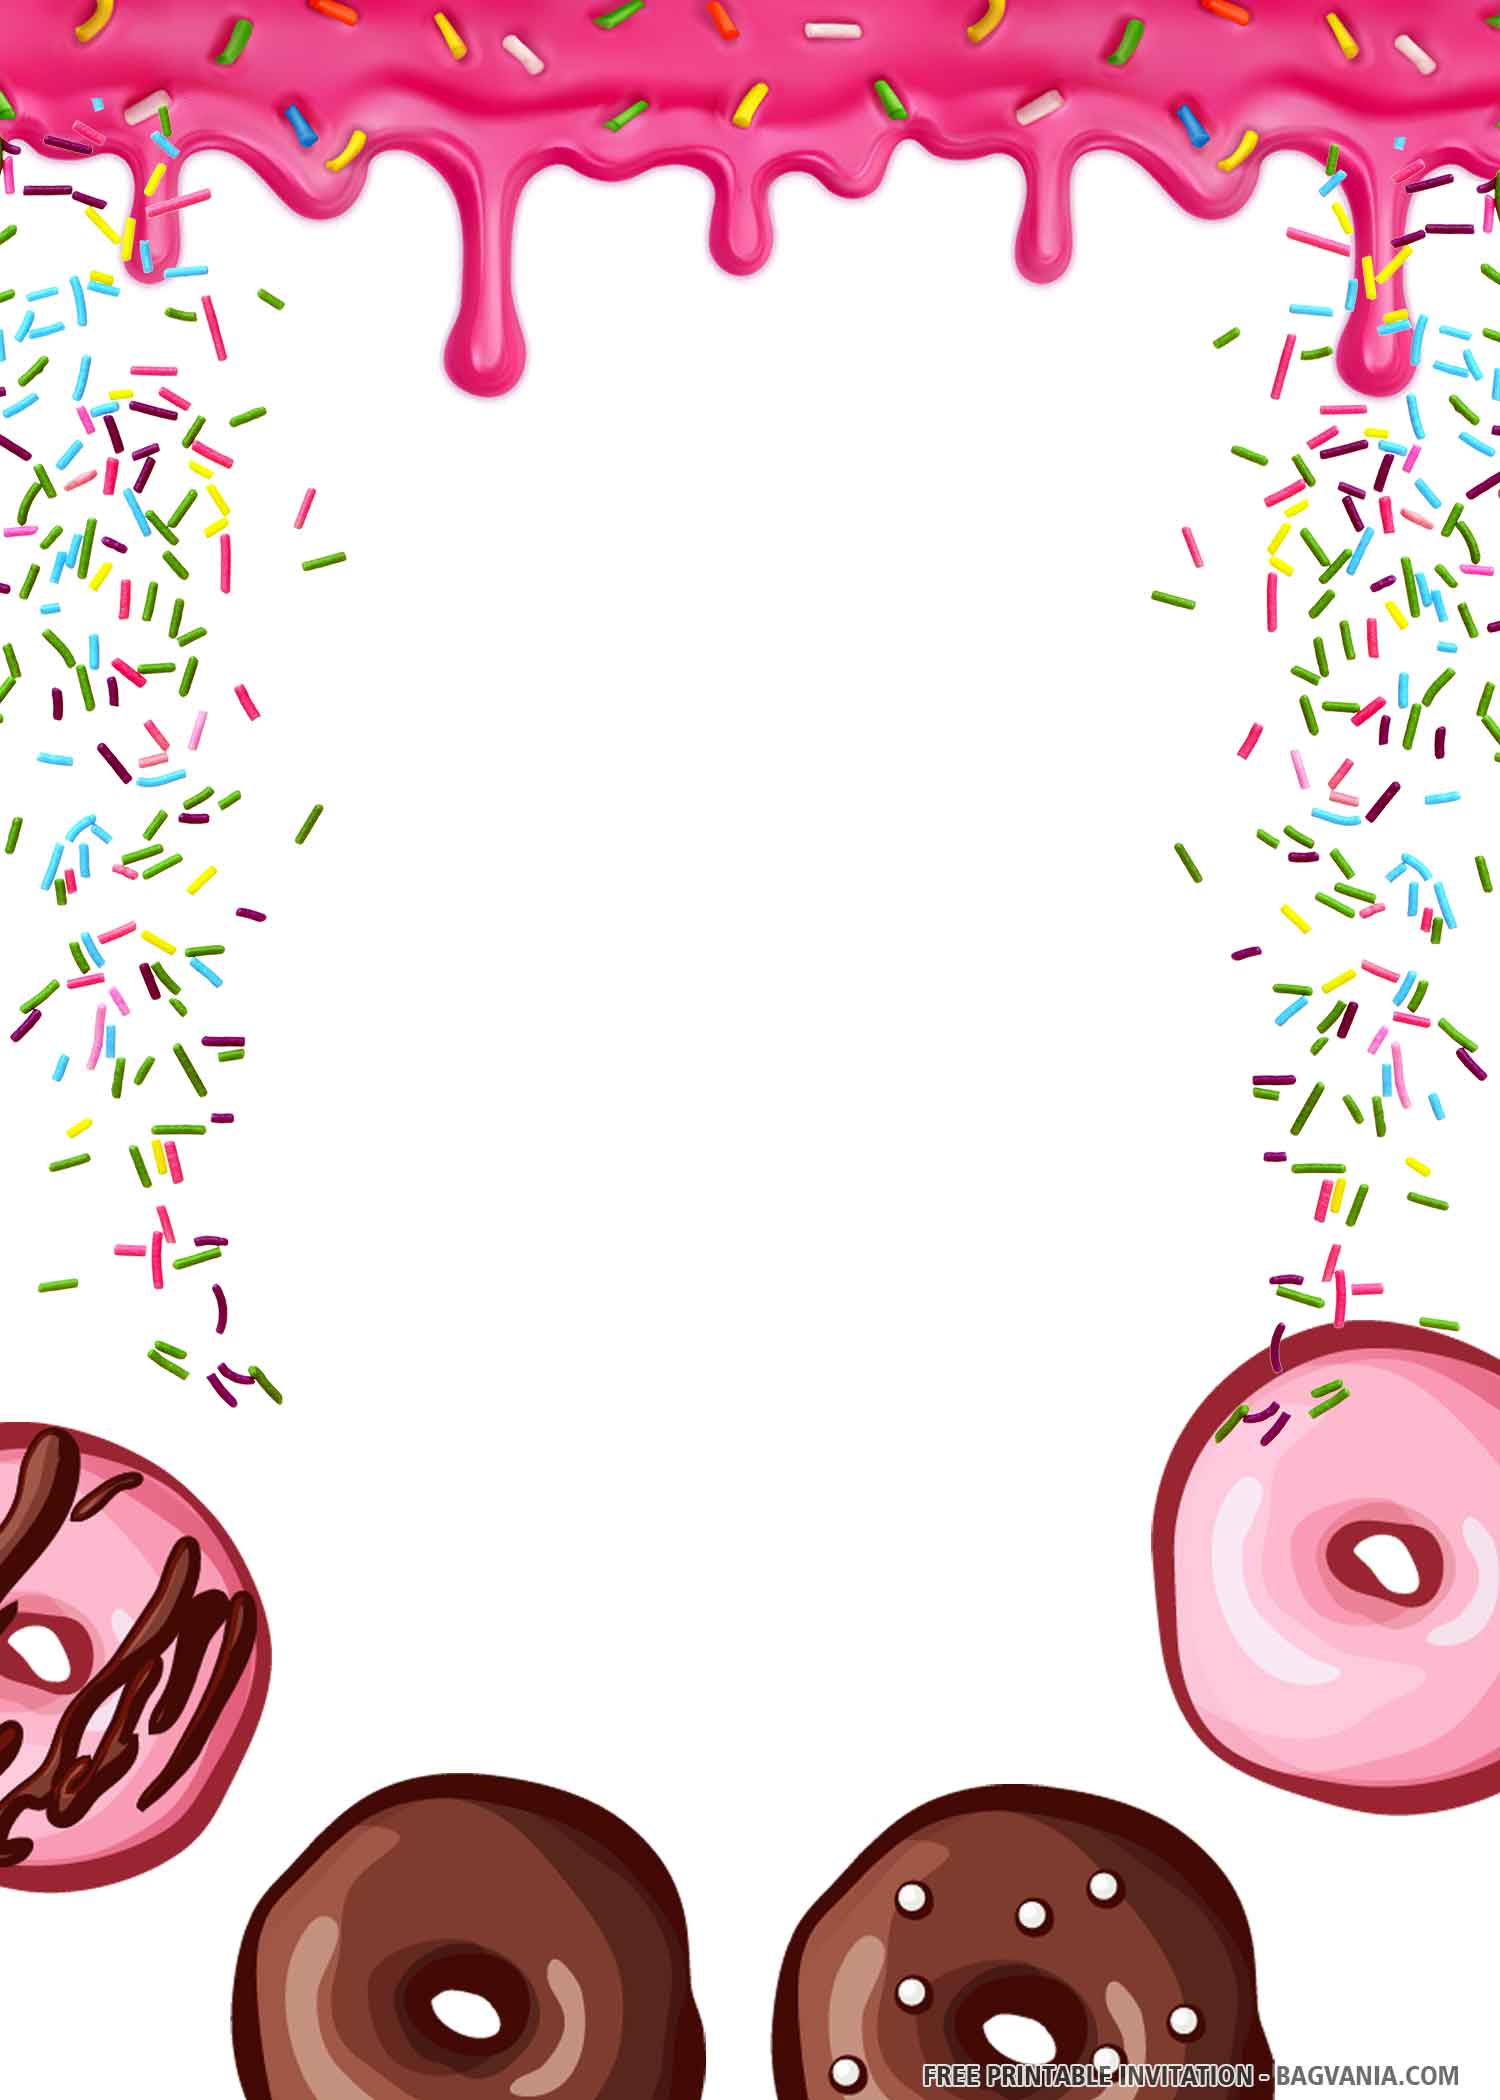 Free Printable Delicious Donuts Birthday Invitation Templates Free Printable Birthday Invitation Templates Bagvania